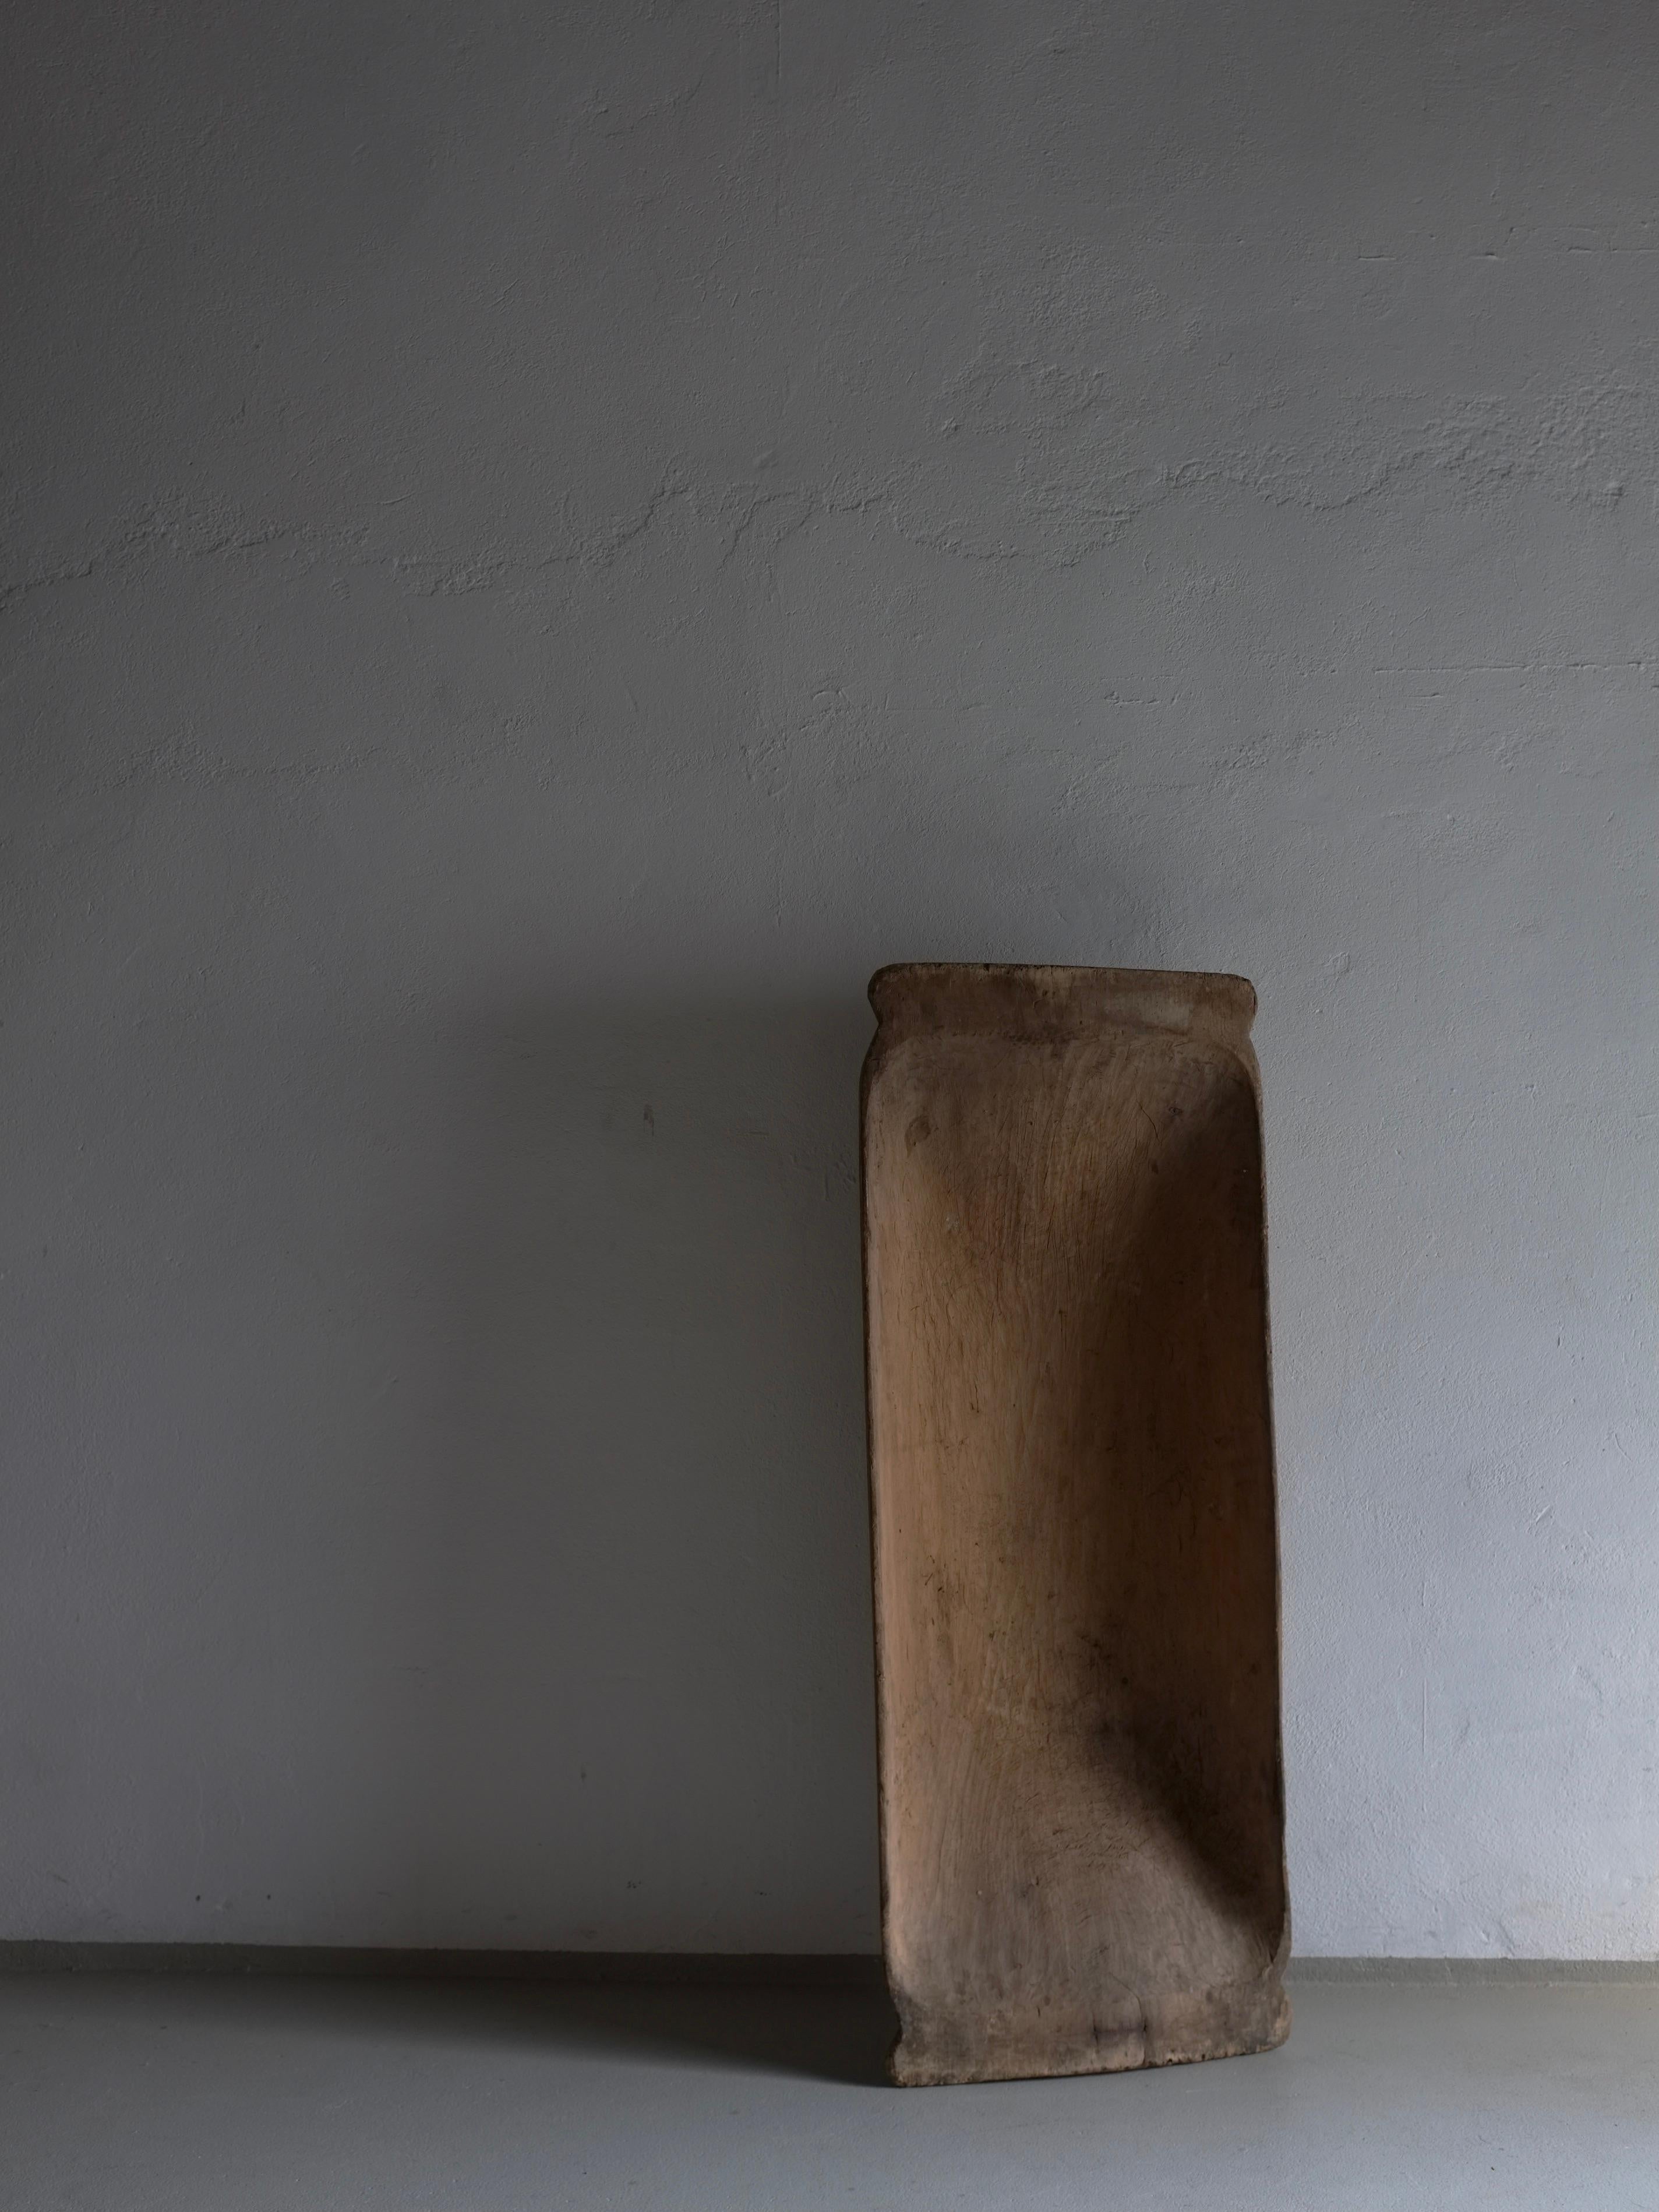 Antike rustikale geschnitzte Holzschale (#6) mit einer schönen Patina. Schwerer Gegenstand.

Zusätzliche Informationen:
Herkunft: Lettland
Abmessungen: B 123 cm x T 48 cm x H 20,5 cm